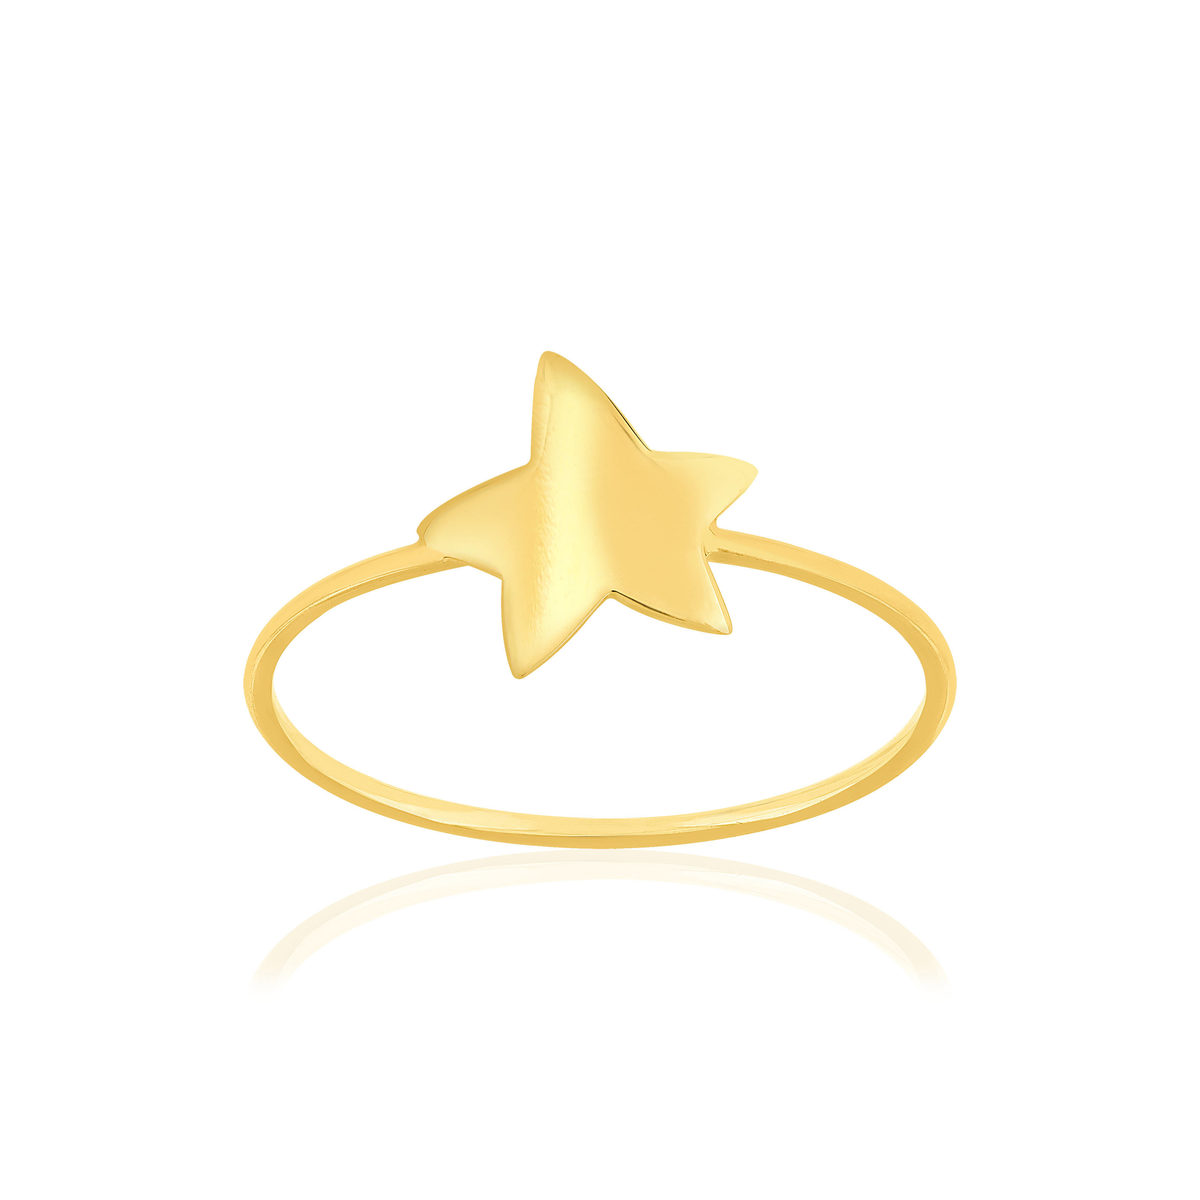 Bague or 750 jaune, motif étoile.